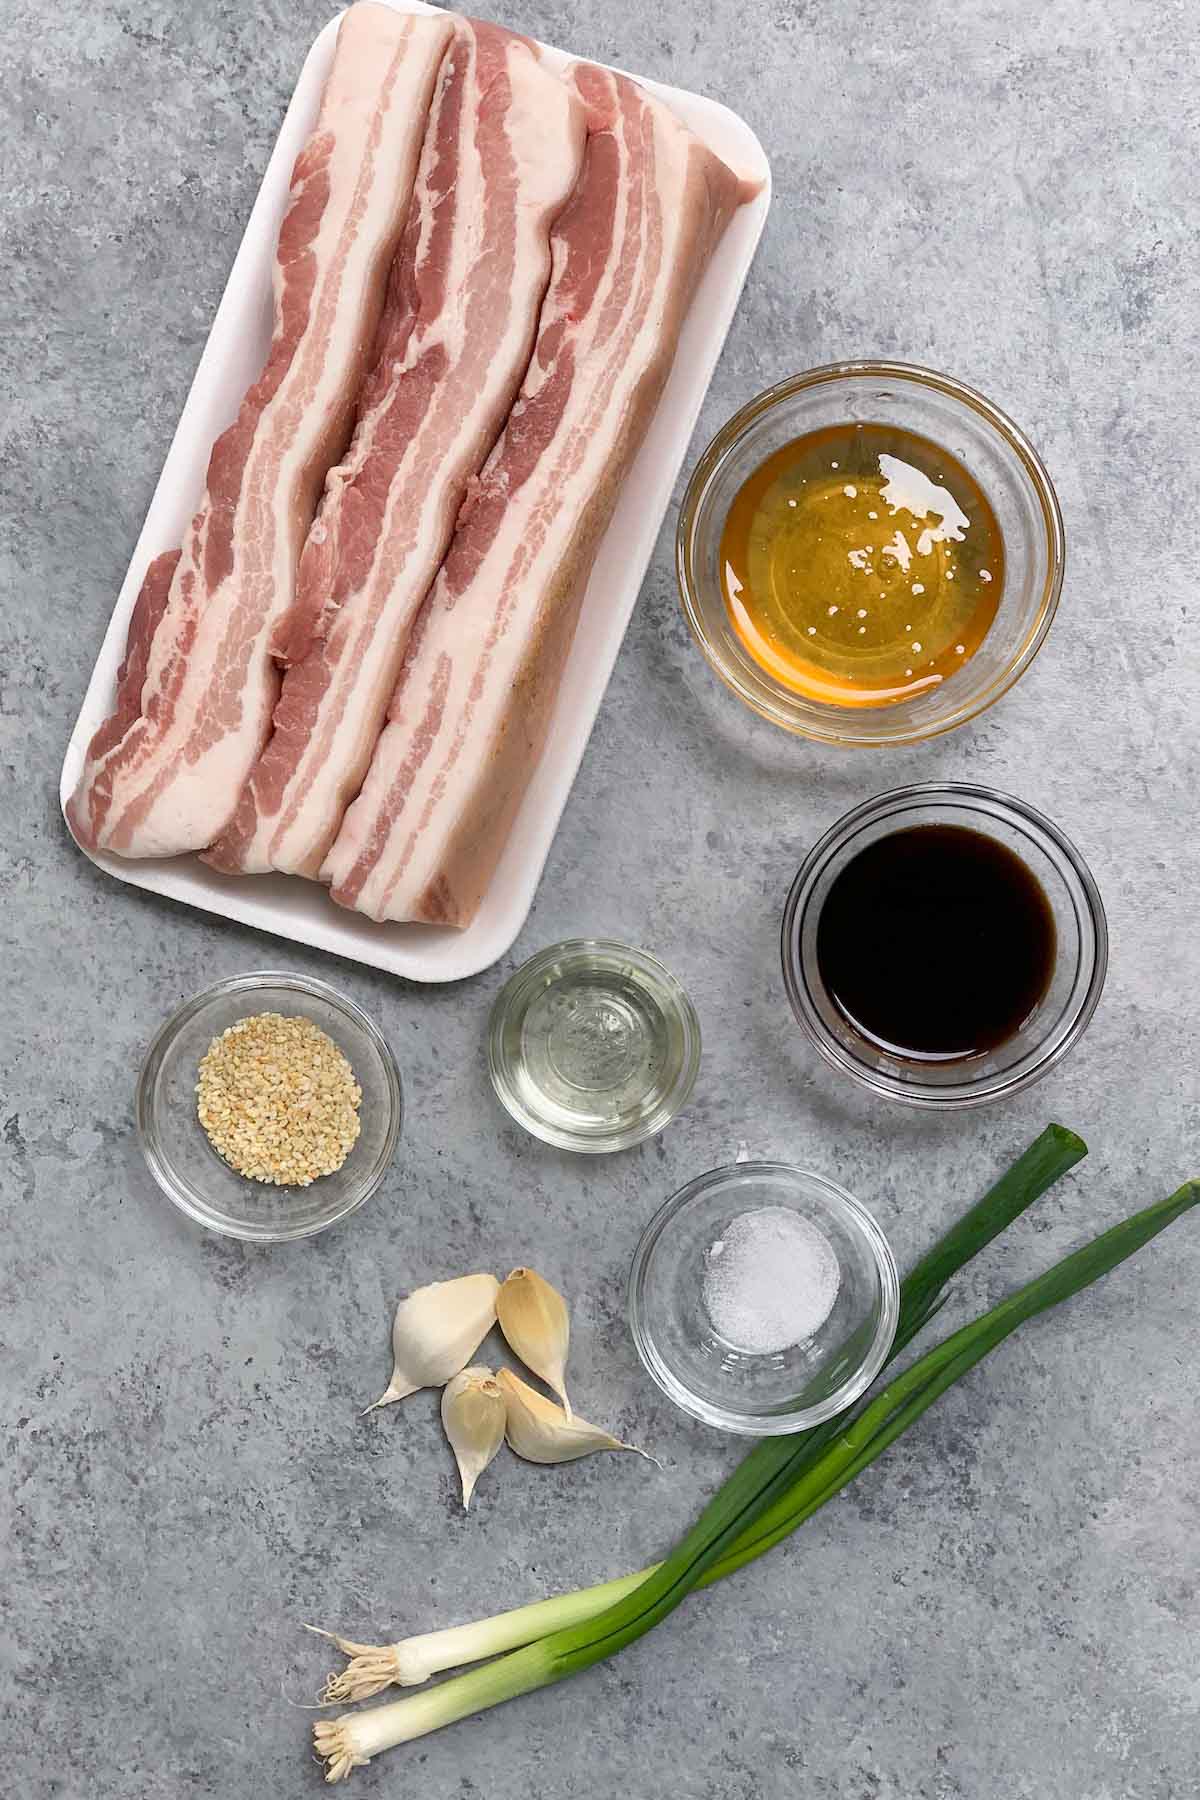 Mettre les ingrédients de la poitrine de porc sous vide sur le comptoir.